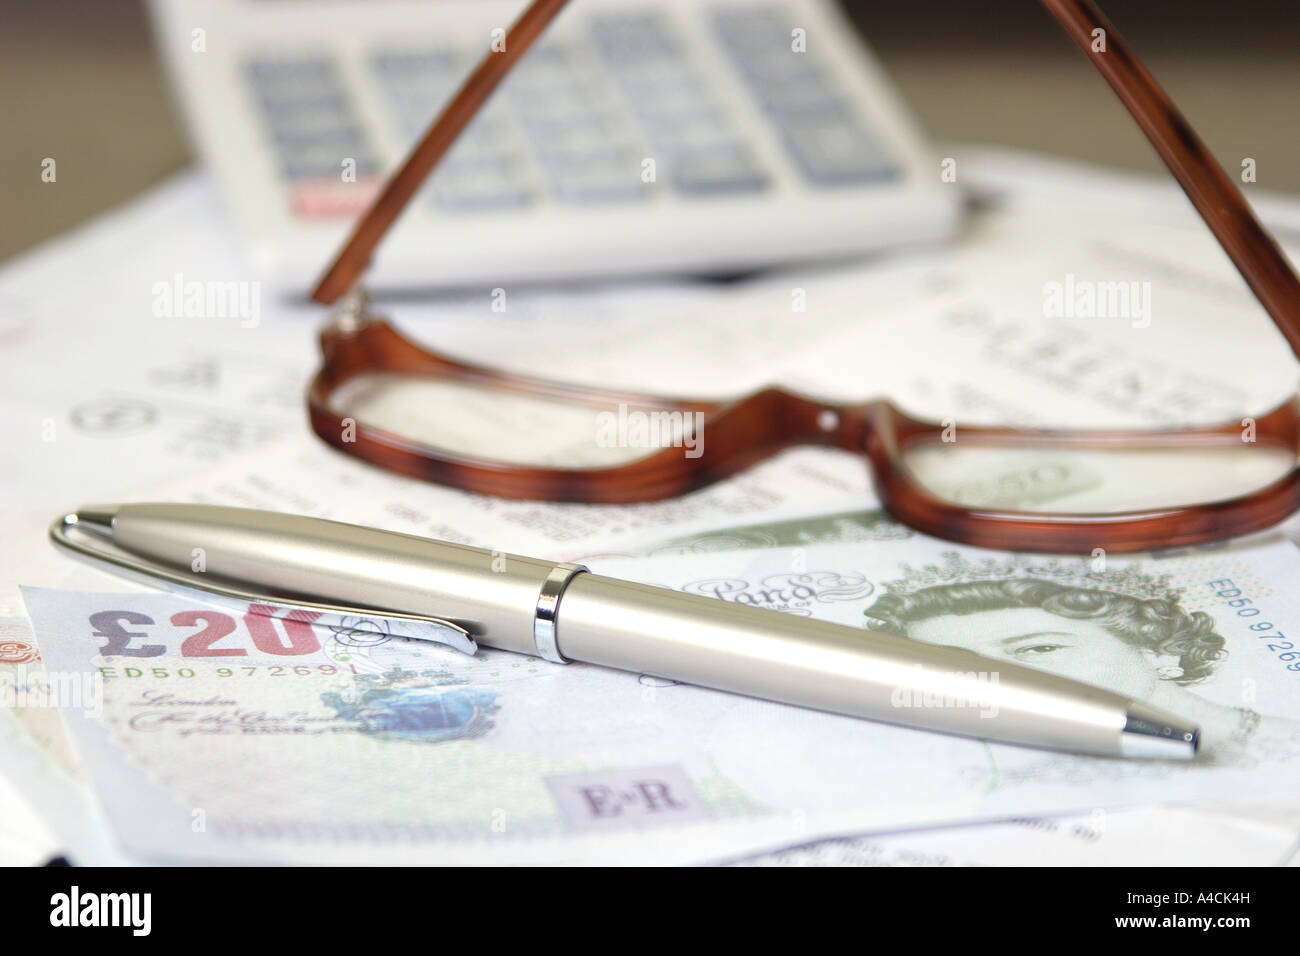 bill, calculator, cash, pen and glasses Stock Photo